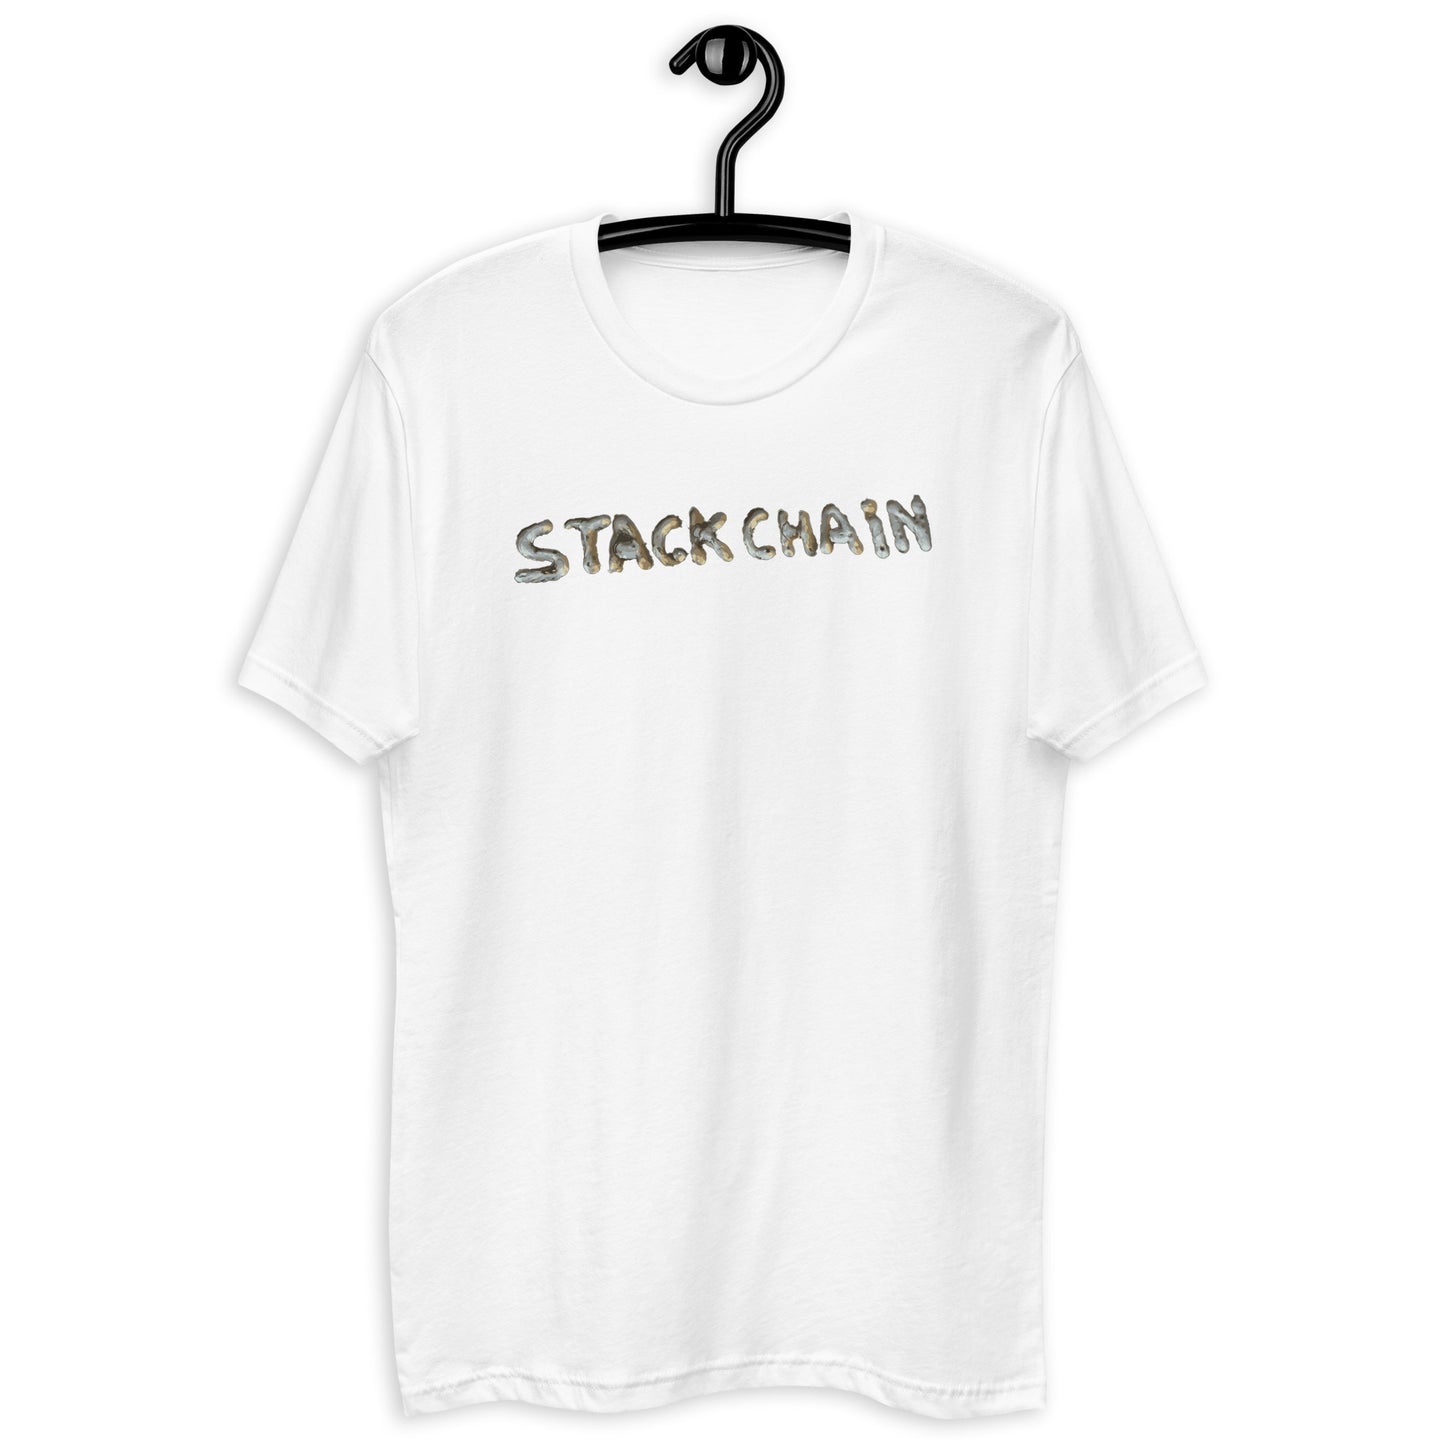 Stackchain